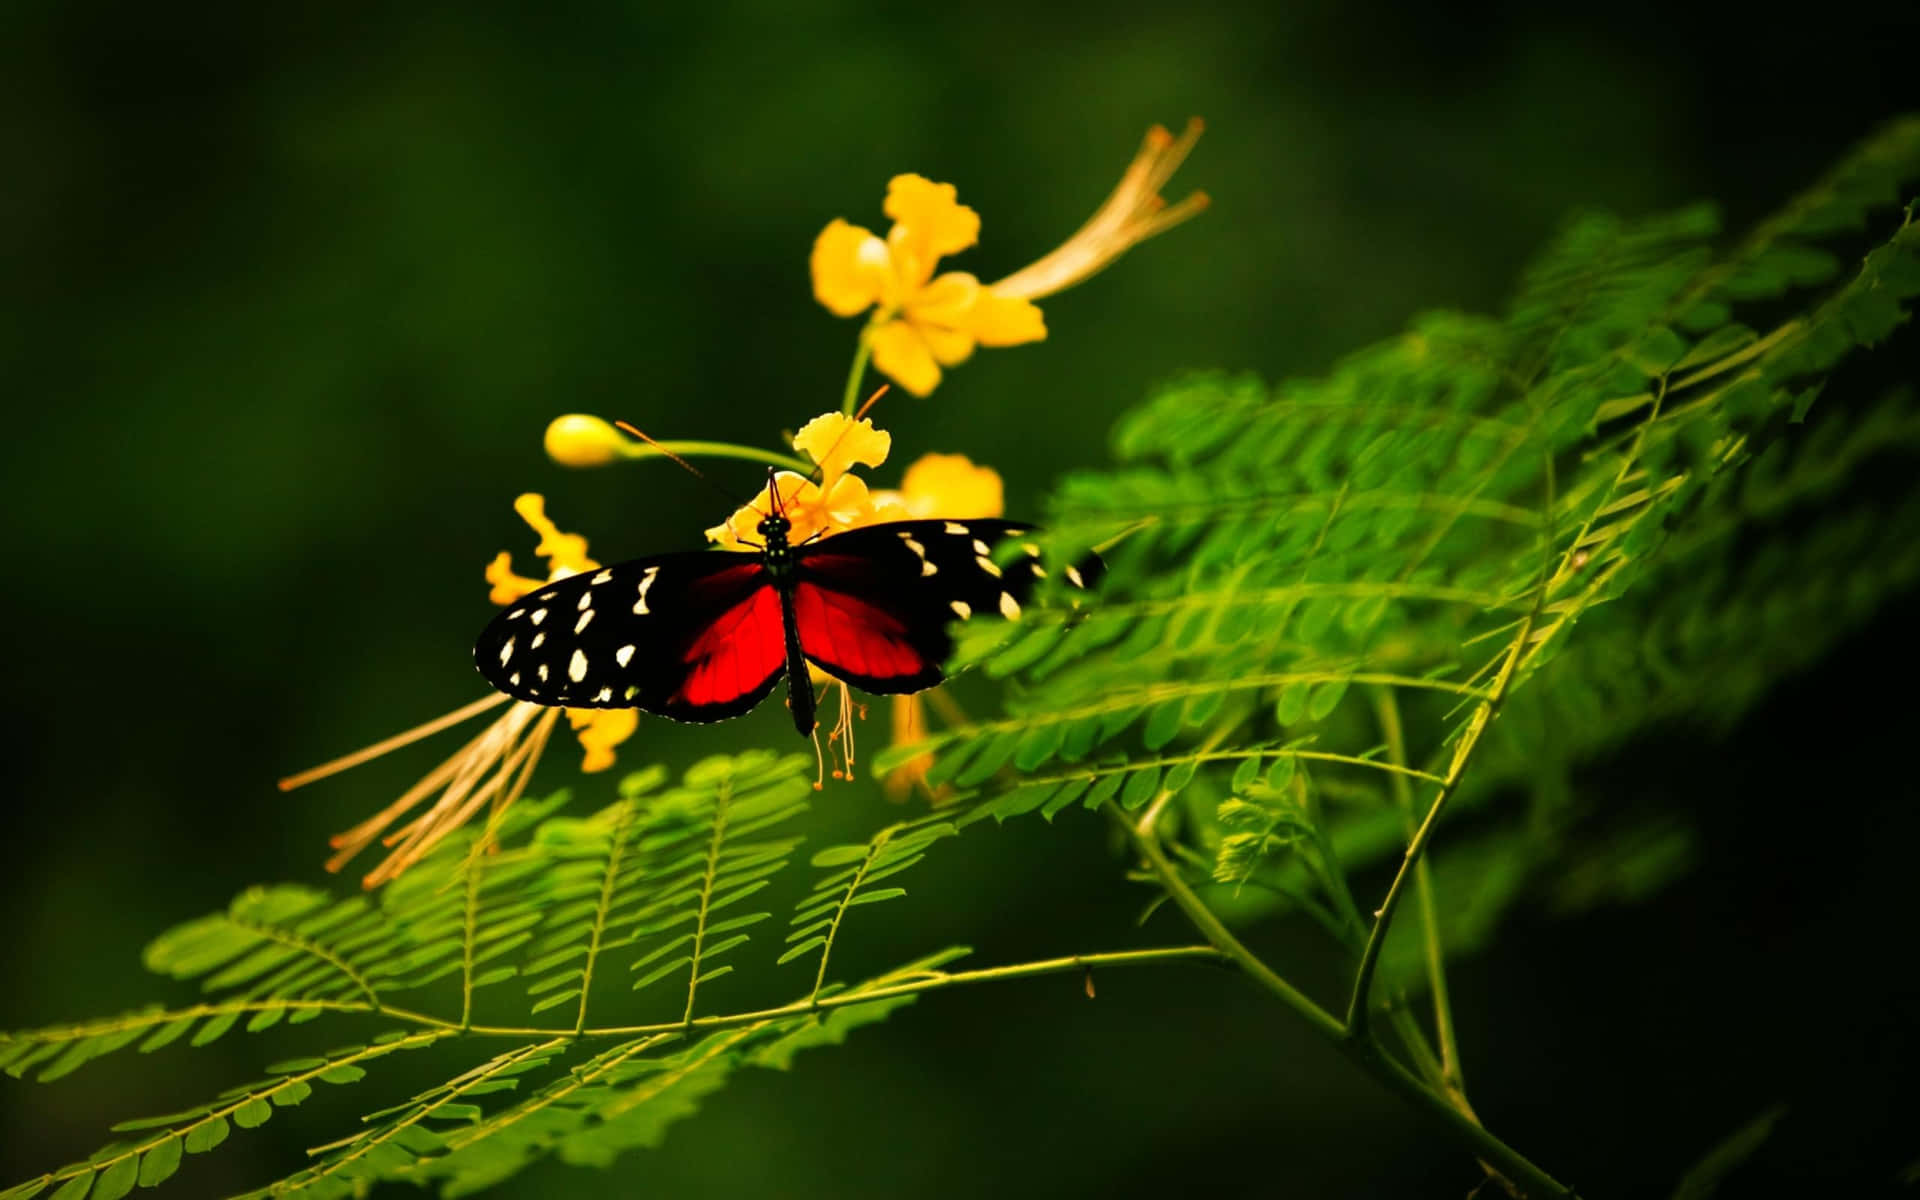 A Red Butterfly Taking Flight Wallpaper